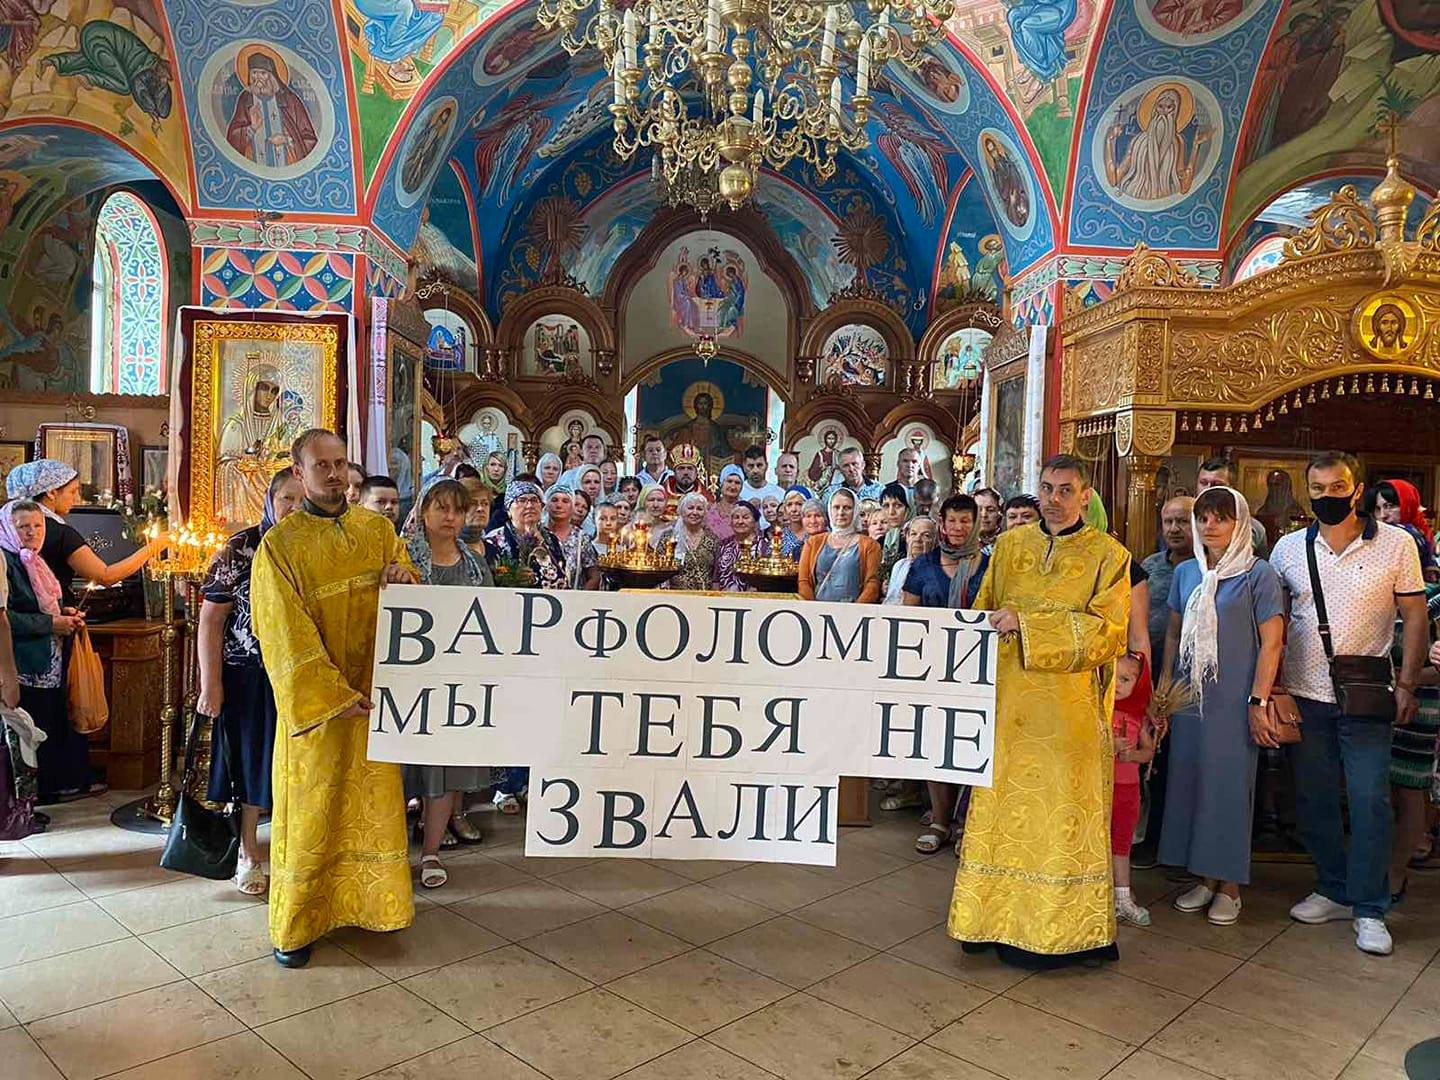 Vizita Patriarhului Bartolomeu: protestăm sau cerem o întâlnire? фото 3